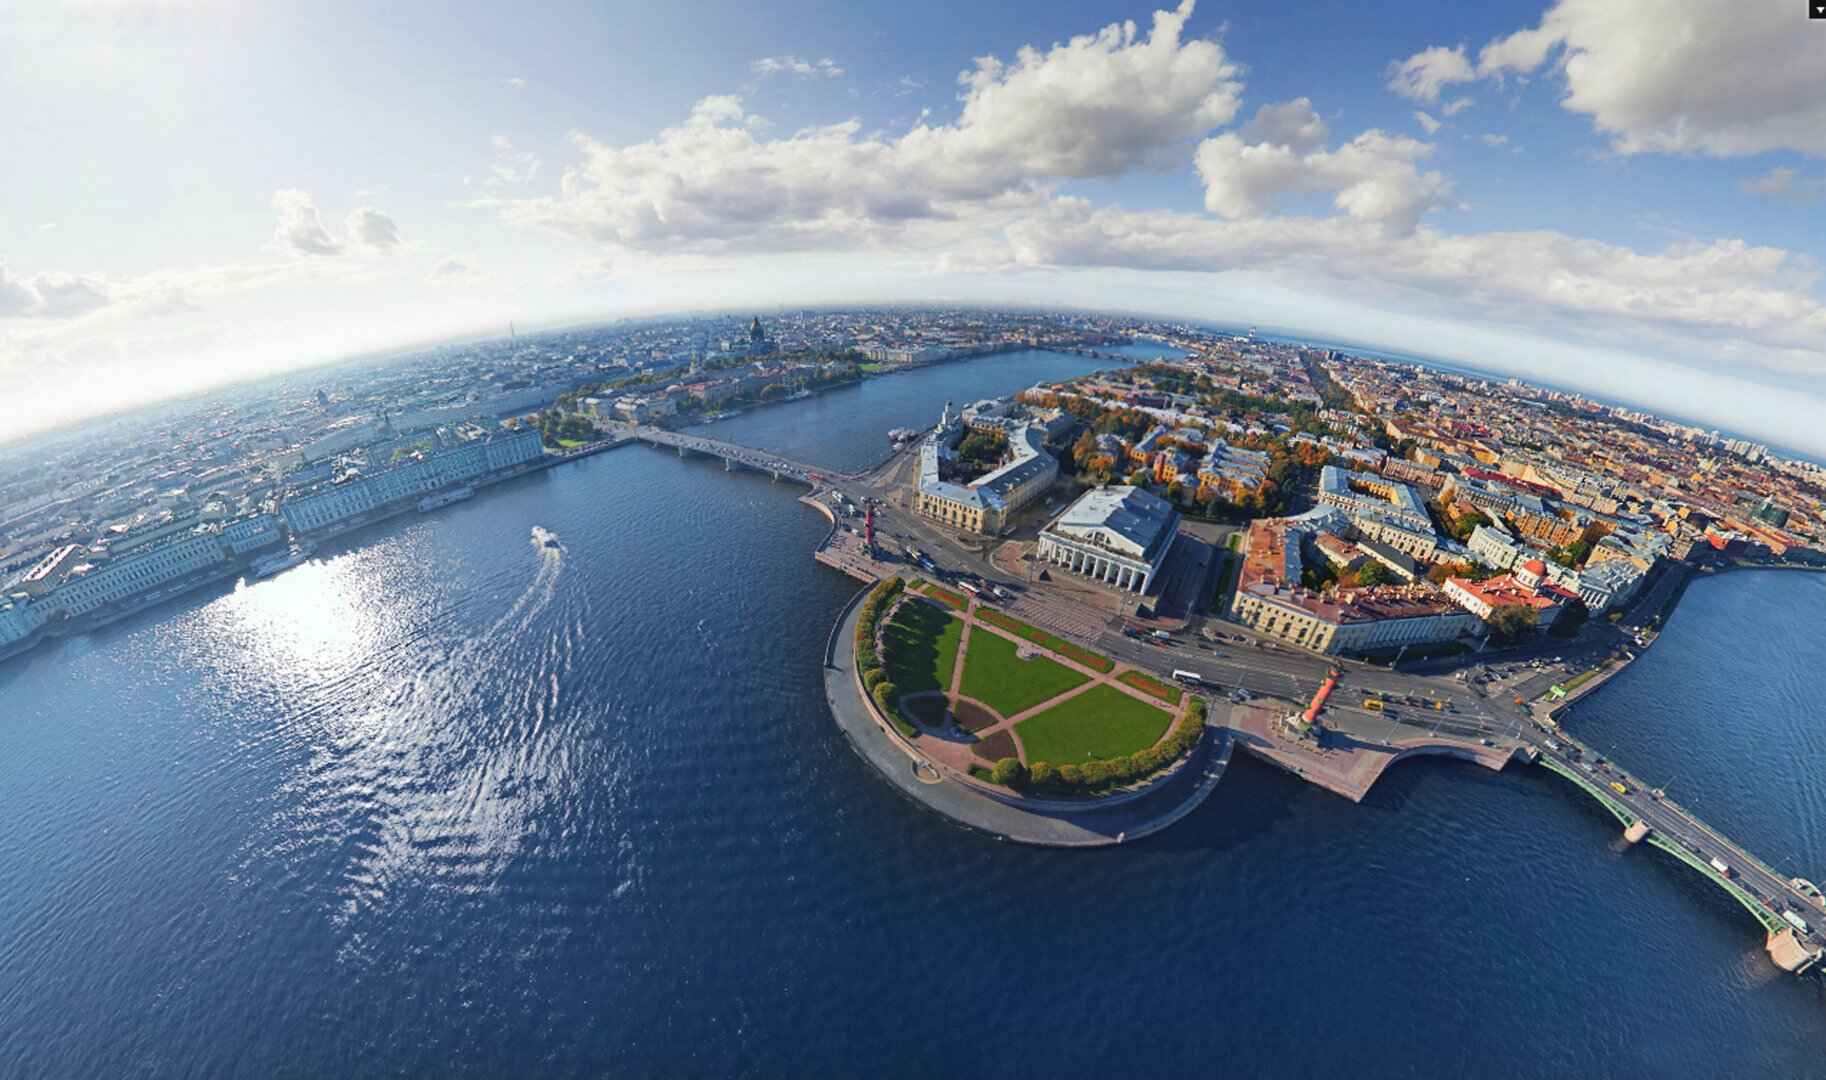 Экскурсия с выходом в Финский залив: как проходит?